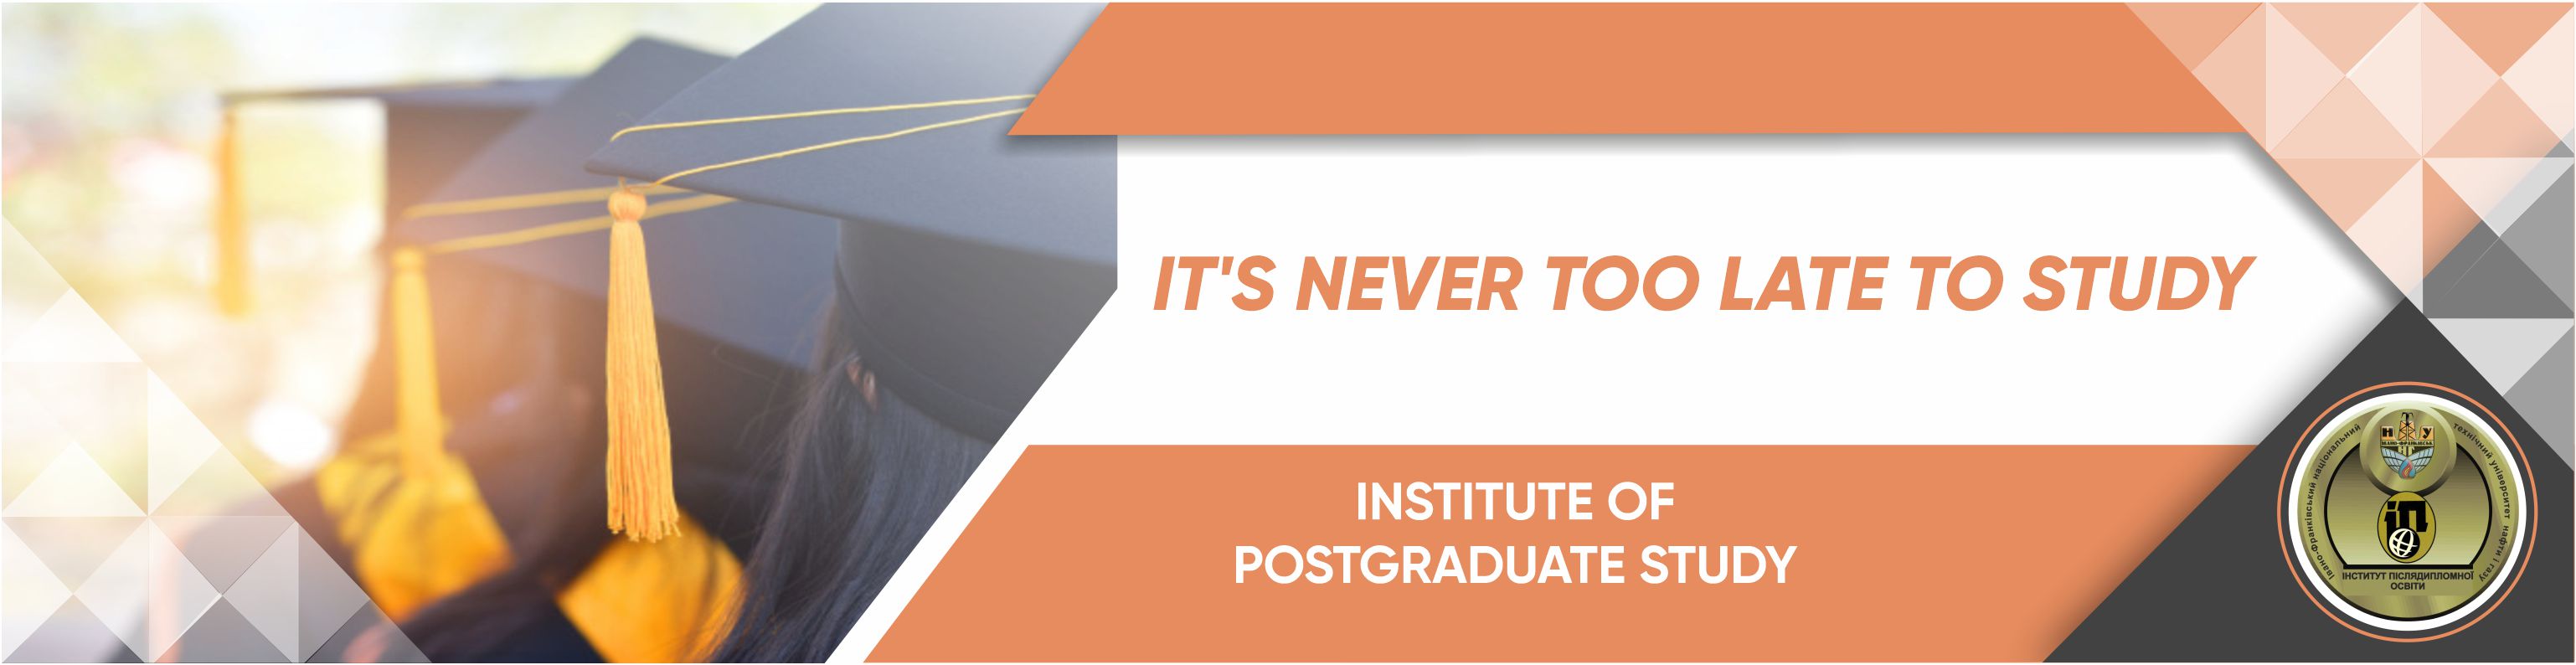 Institute of Postgraduate Study